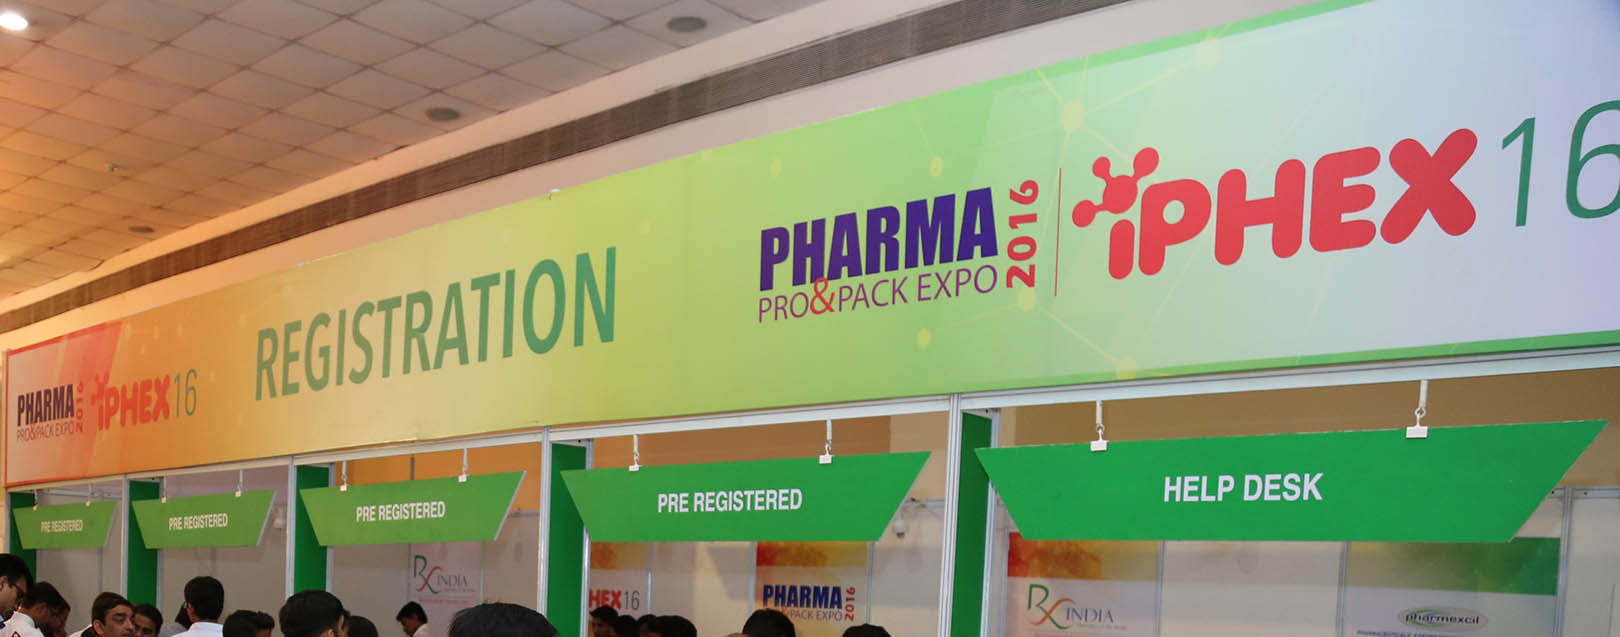 Pharma Pro & Pack 2016 unveils in Mumbai